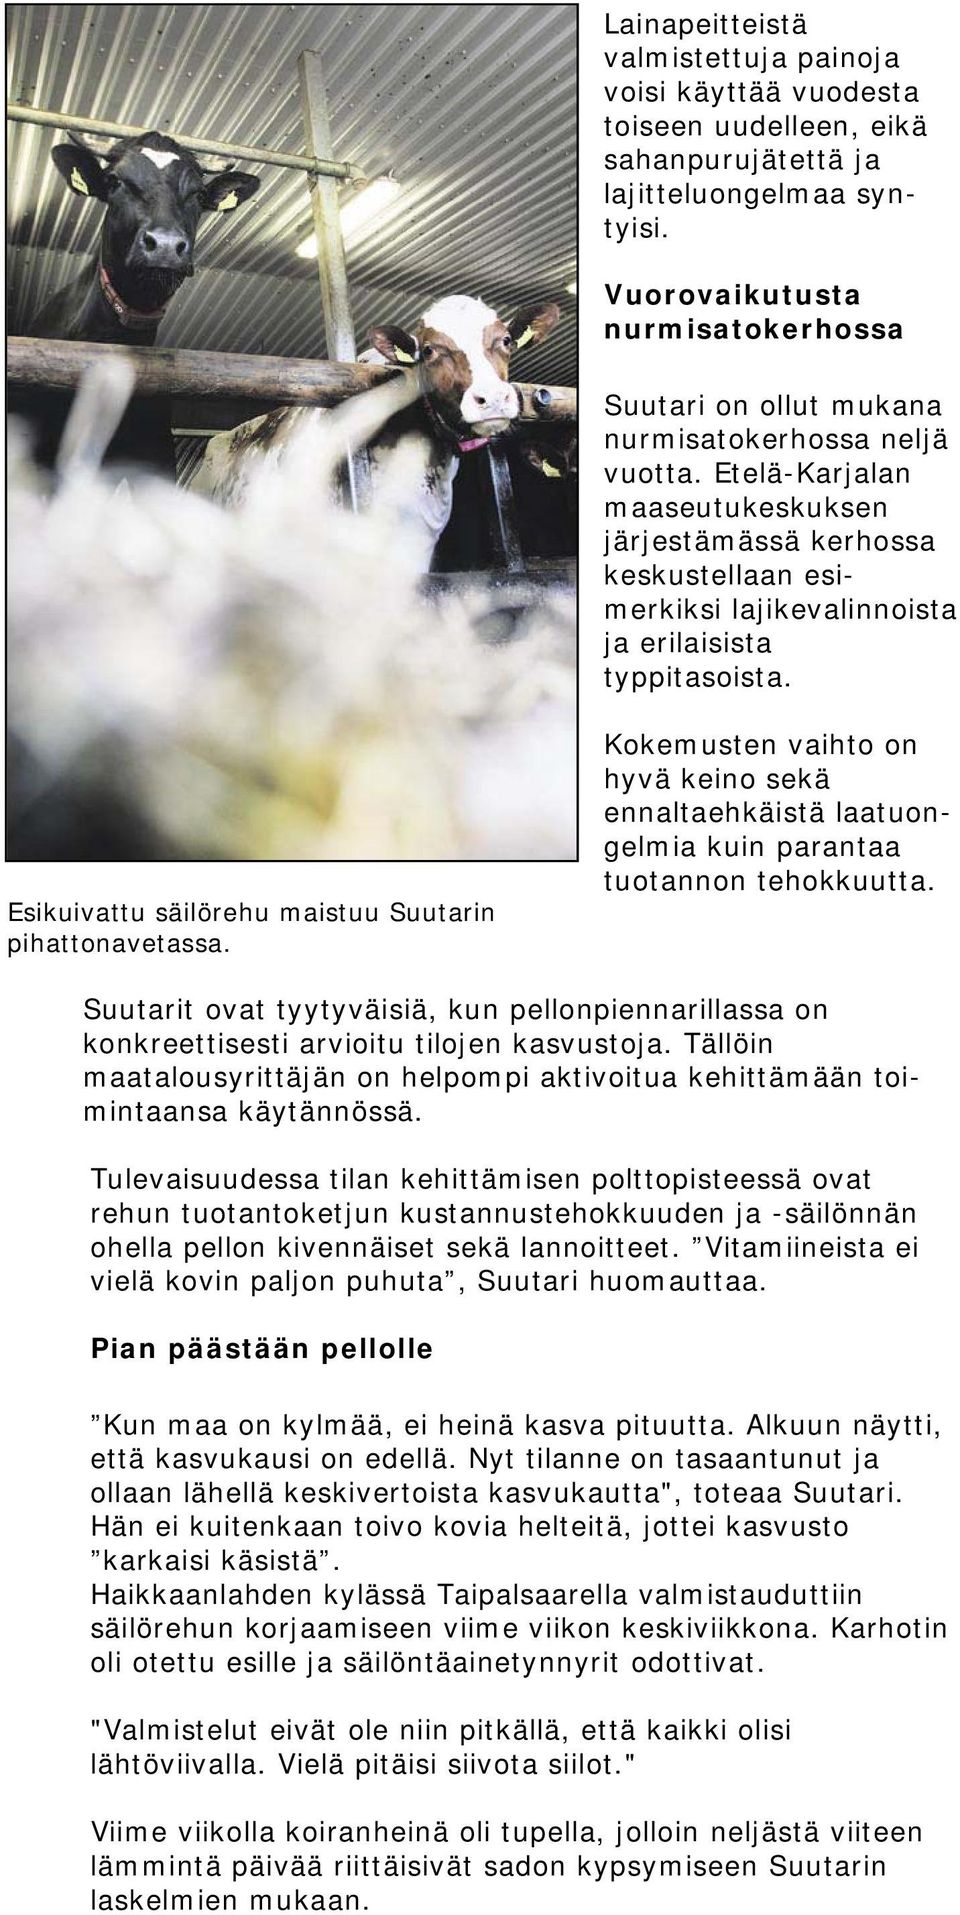 Etelä-Karjalan maaseutukeskuksen järjestämässä kerhossa keskustellaan esimerkiksi lajikevalinnoista ja erilaisista typpitasoista. Esikuivattu säilörehu maistuu Suutarin pihattonavetassa.